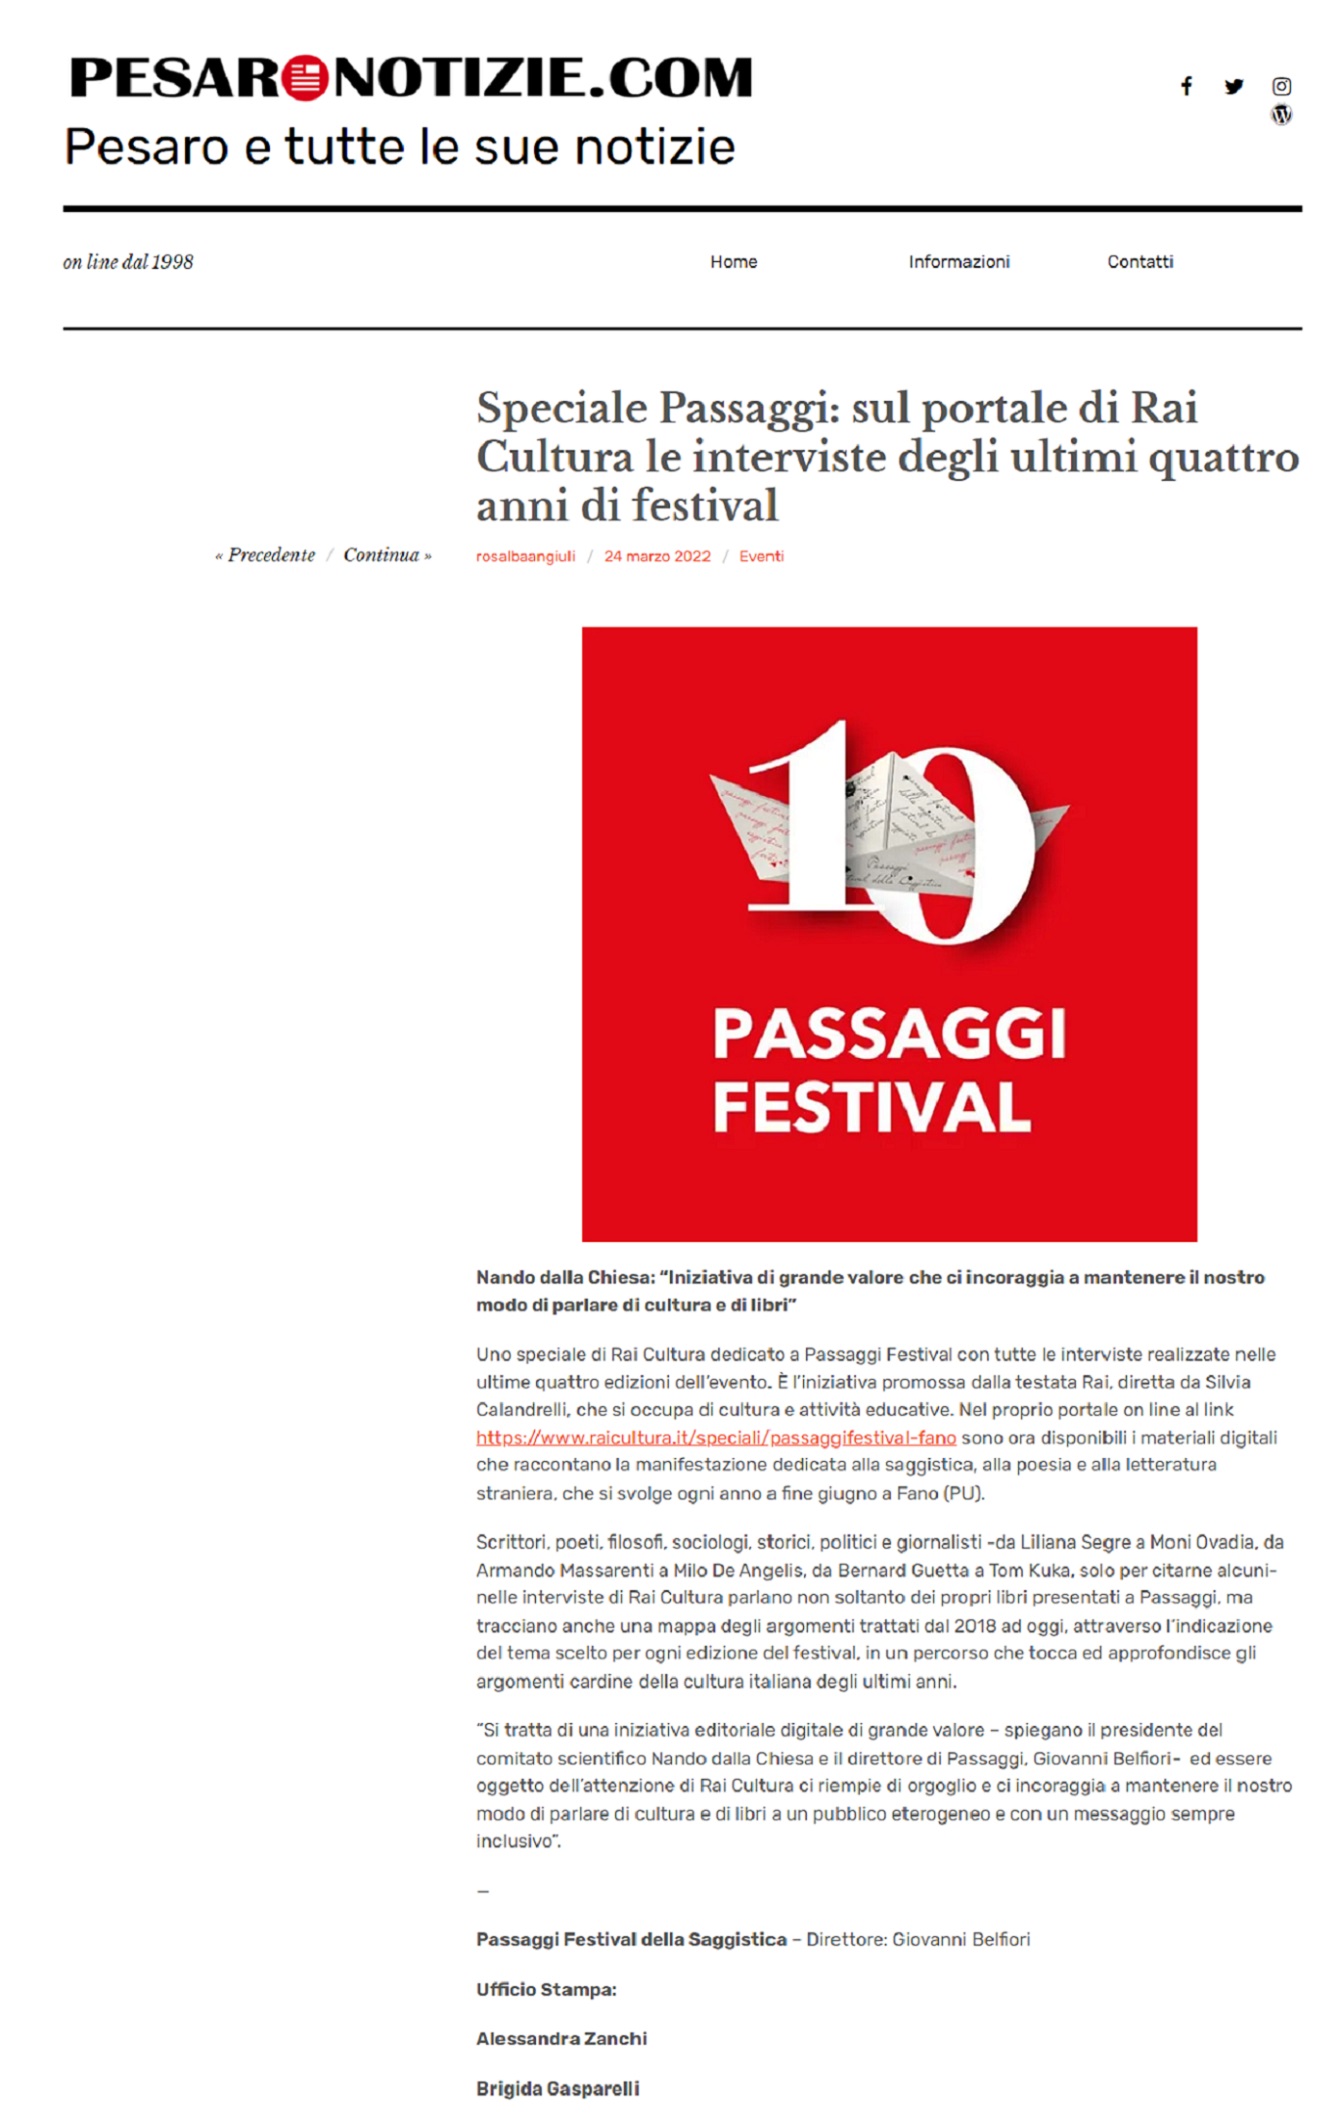 Pesaro Notizie - Speciale Passaggi: sul portale di Rai Cultura le interviste degli ultimi quattro anni di festival